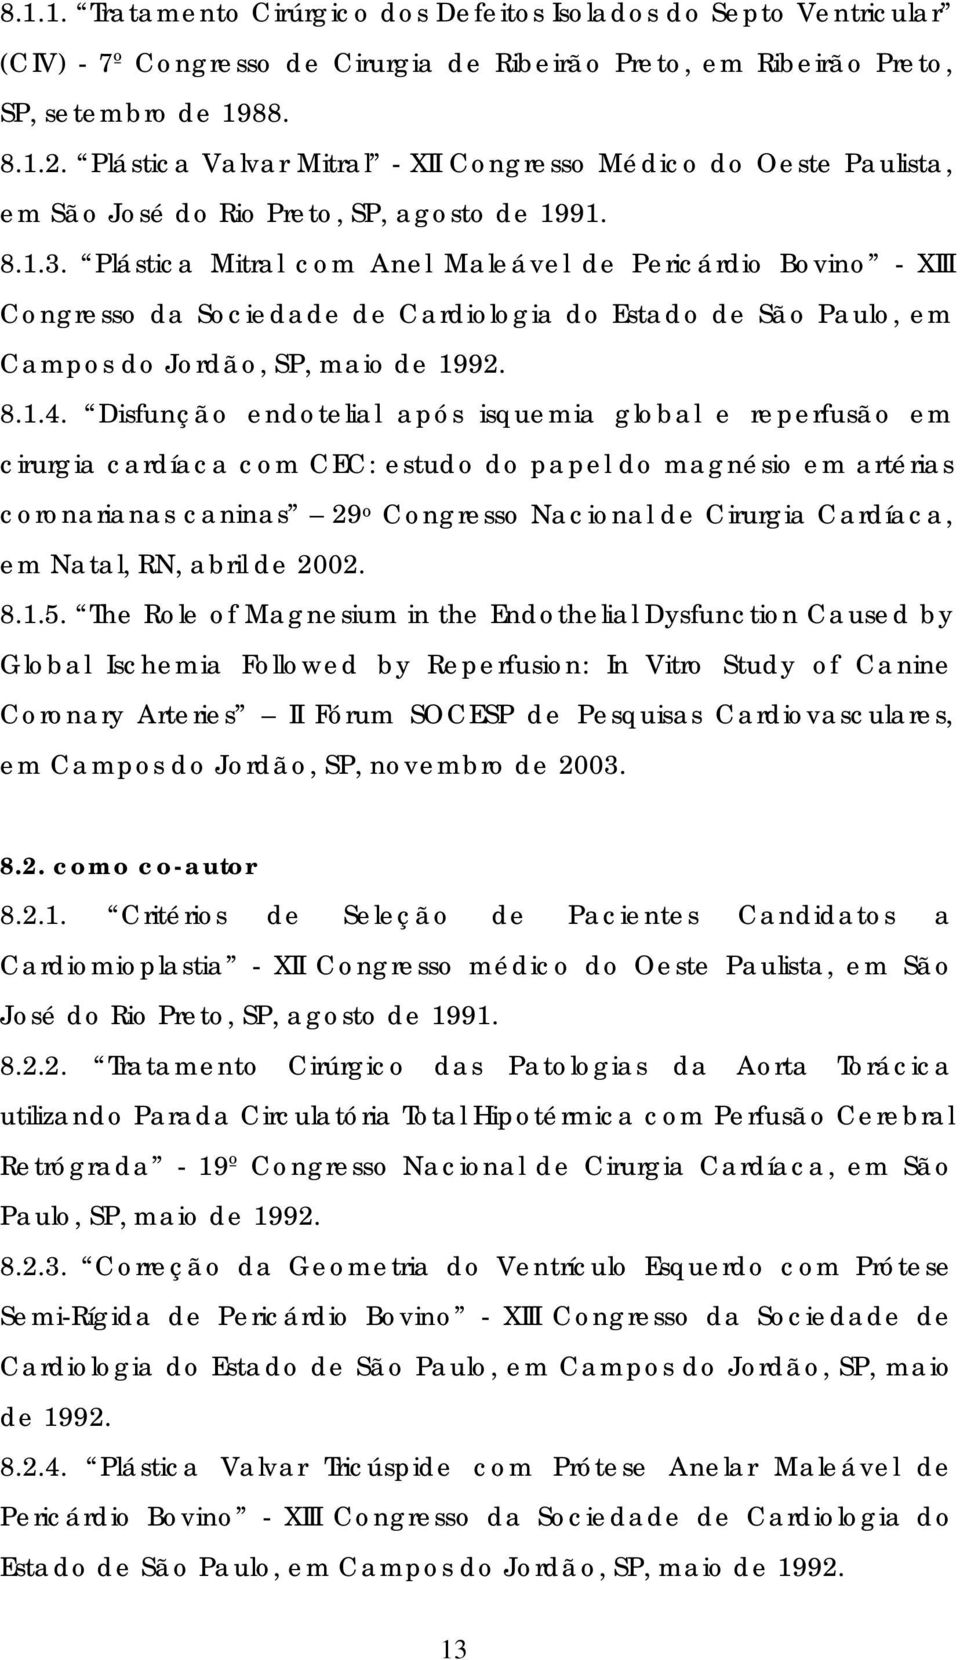 Plástica Mitral com Anel Maleável de Pericárdio Bovino - XIII Congresso da Sociedade de Cardiologia do Estado de São Paulo, em Campos do Jordão, SP, maio de 1992. 8.1.4.